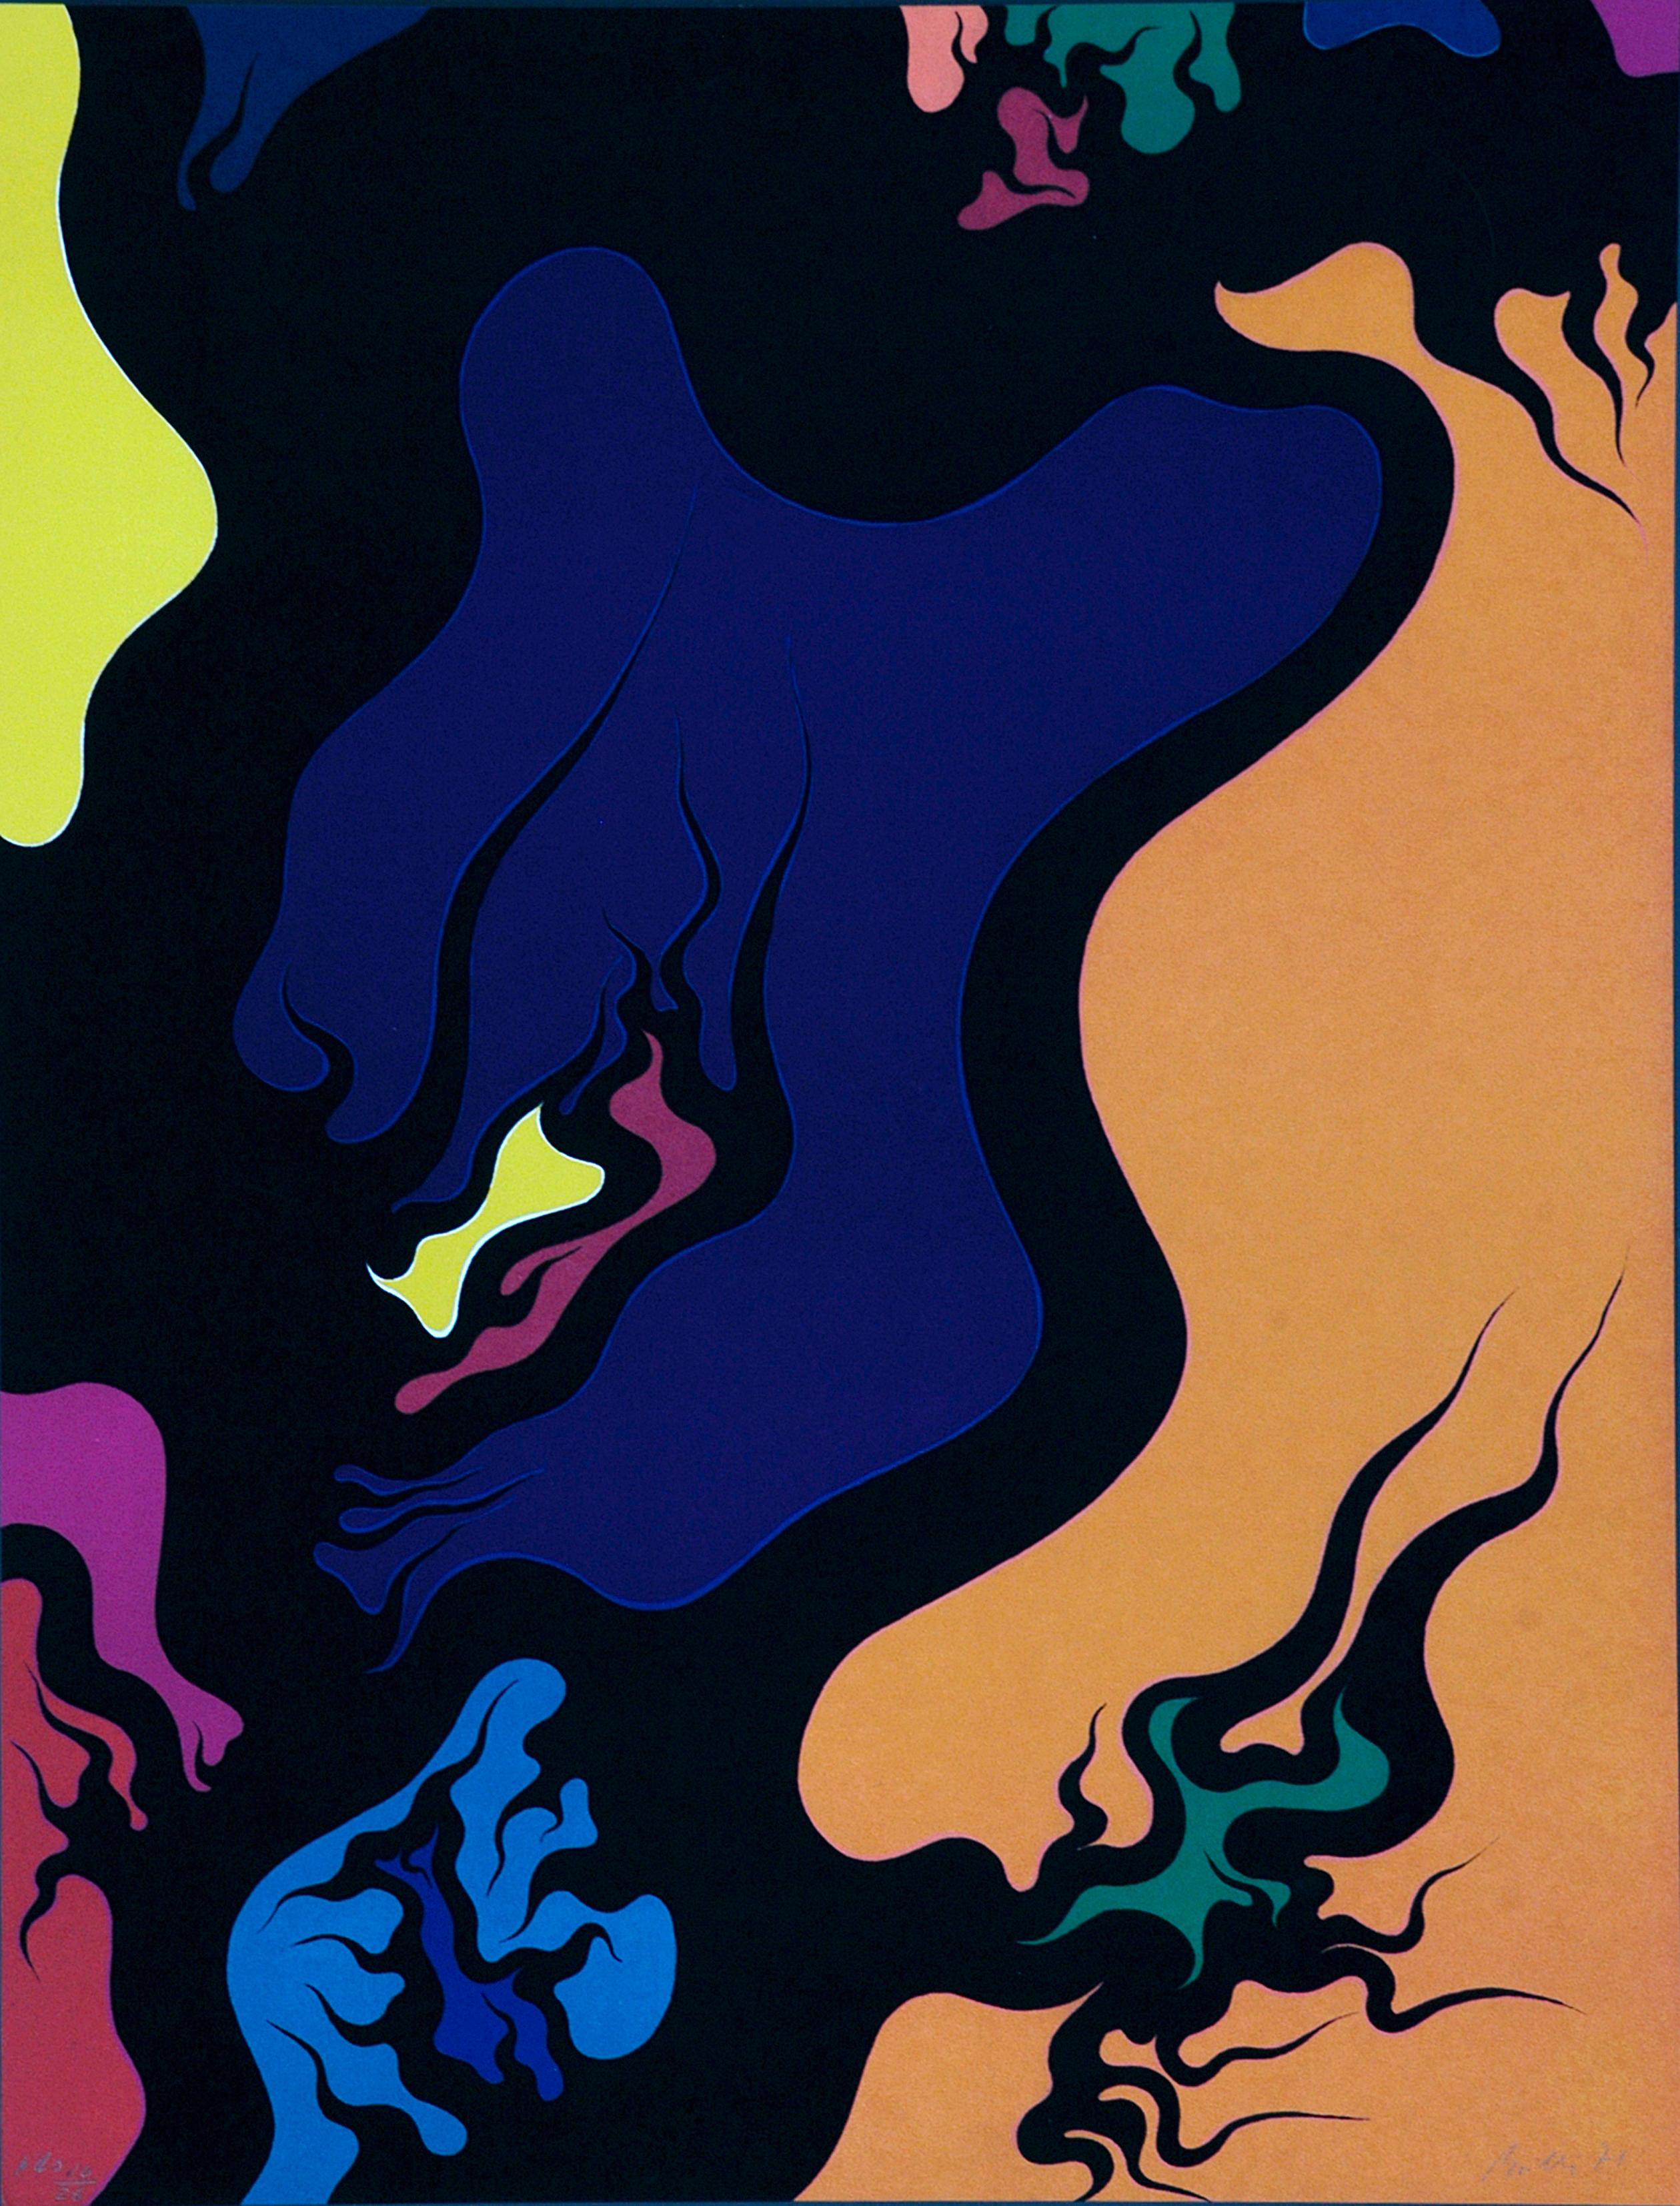 Purple Hell est une étonnante lithographie colorée, réalisée par Luigi Boille en 1971.

Ce tirage original est signé à la main. Edition de 26 tirages.

Cette œuvre d'art emblématique présente une composition abstraite aux couleurs sombres et